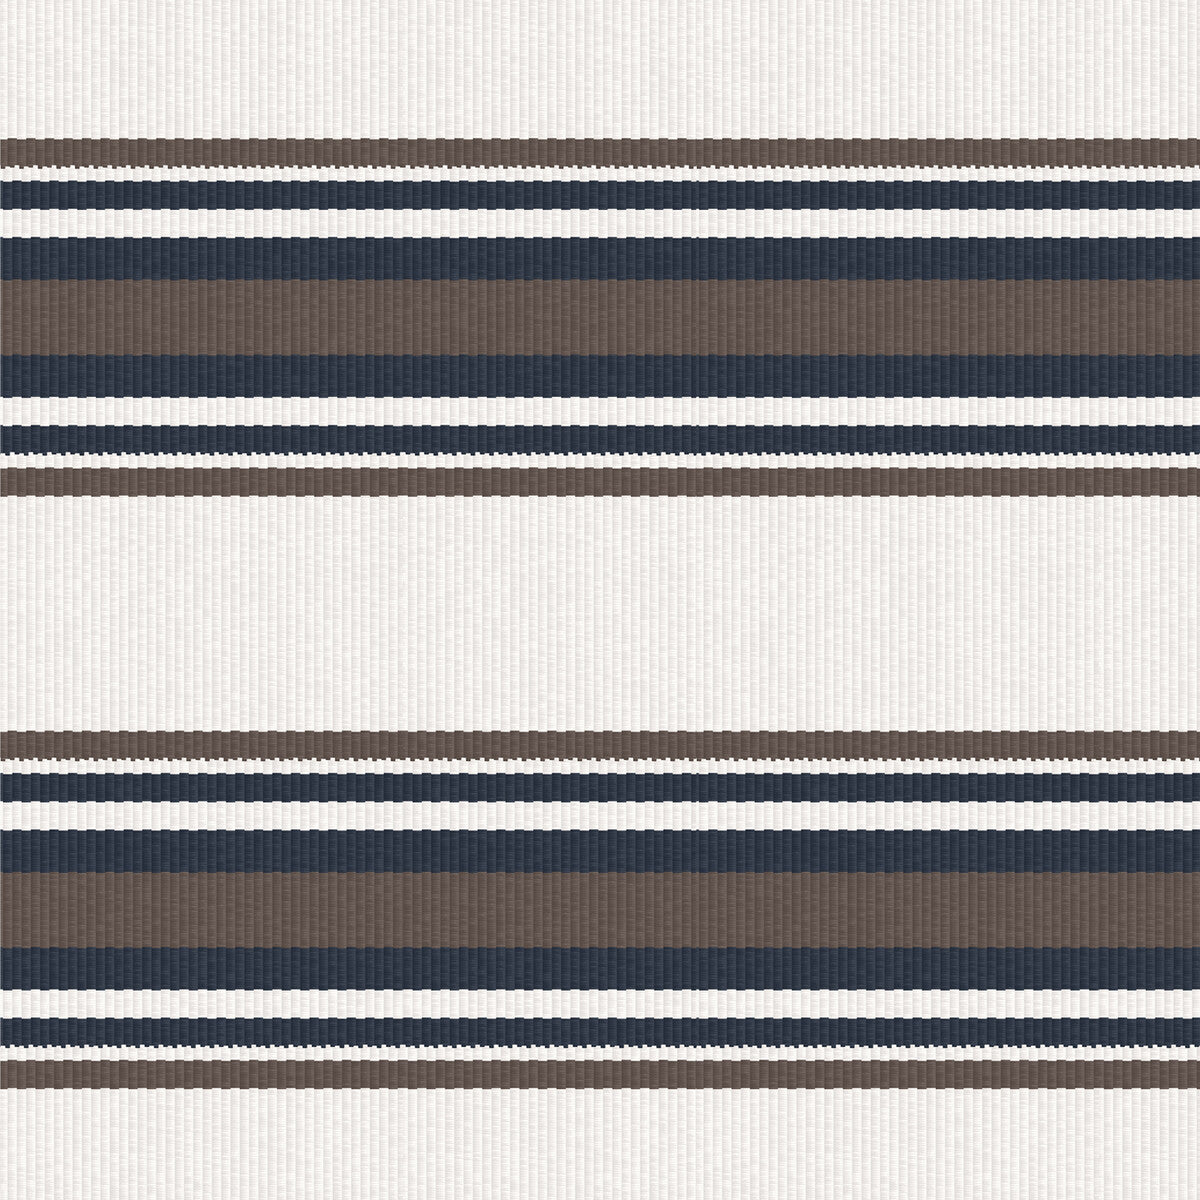 Pinilla fabric in crudo/marron color - pattern LCT5463.004.0 - by Gaston y Daniela in the Lorenzo Castillo IV collection